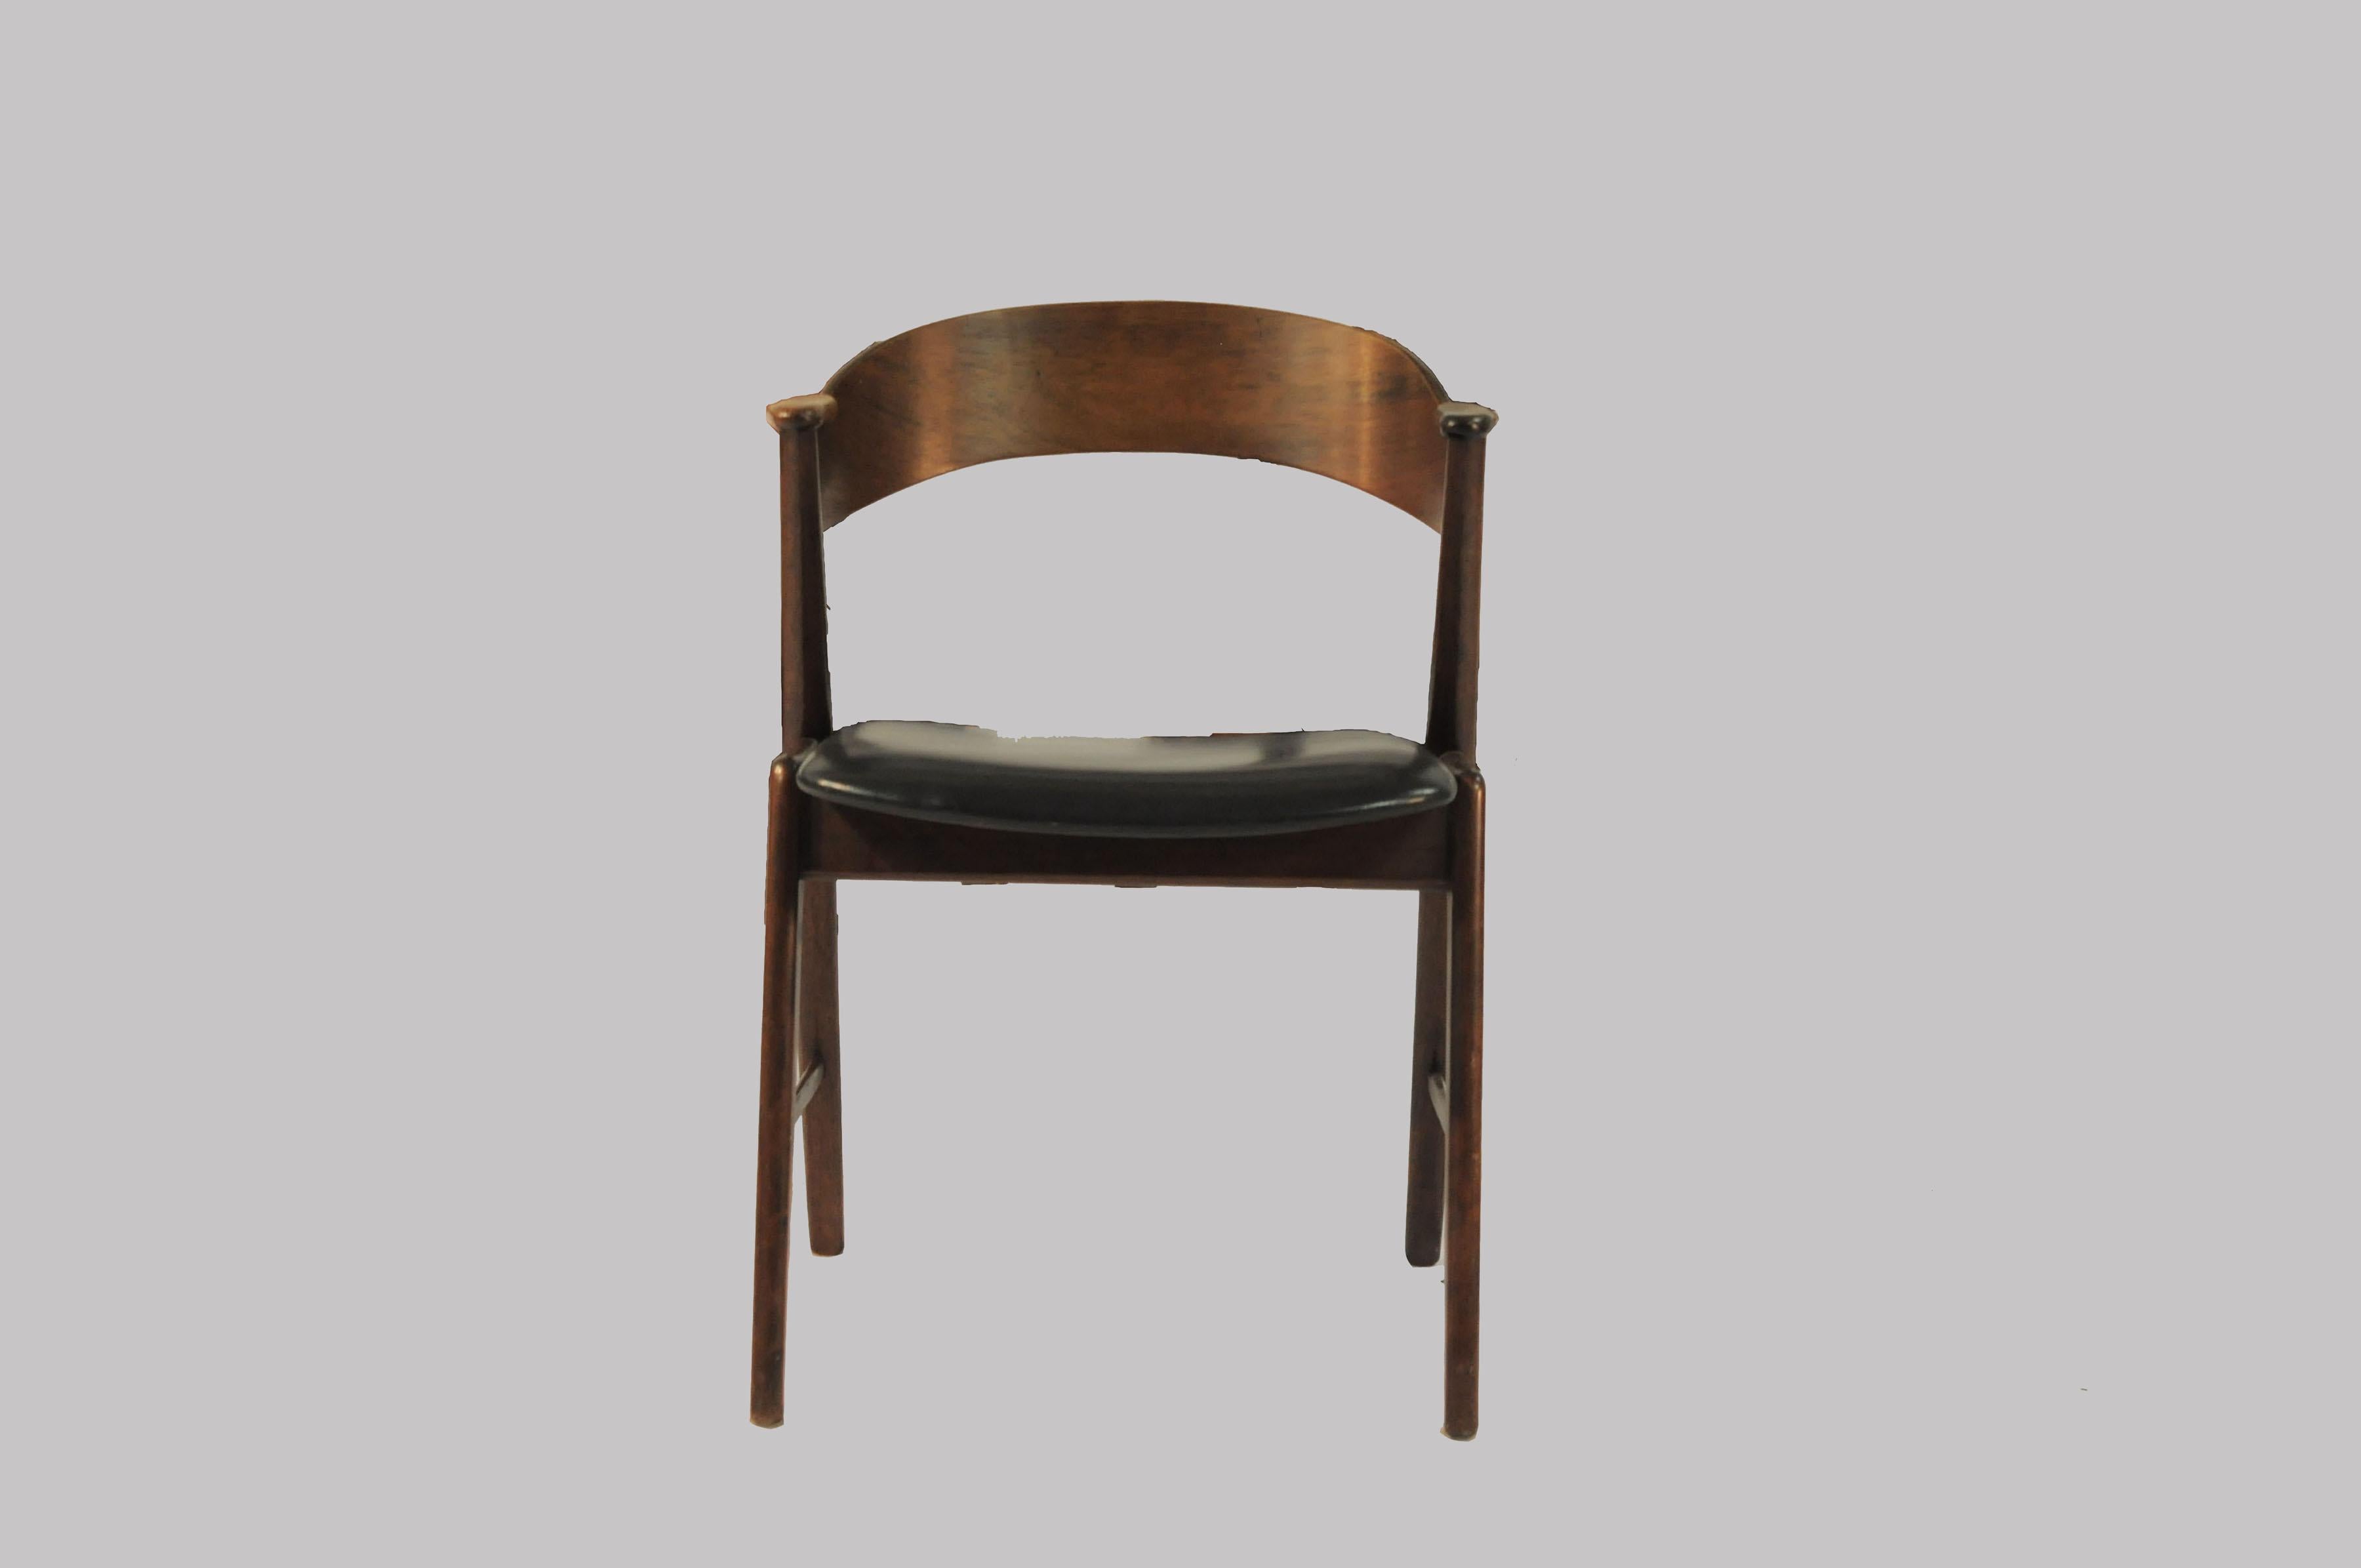 Set aus sechs Esszimmerstühlen mit geschwungenen Rückenlehnen aus Palisanderholz, die in Armlehnen aus Palisanderholz gleiten, und eleganten Gestellen aus Teakholz. Die Stühle sind allgemein bekannt als Modell 32 von Korup Stolefabrik

Die